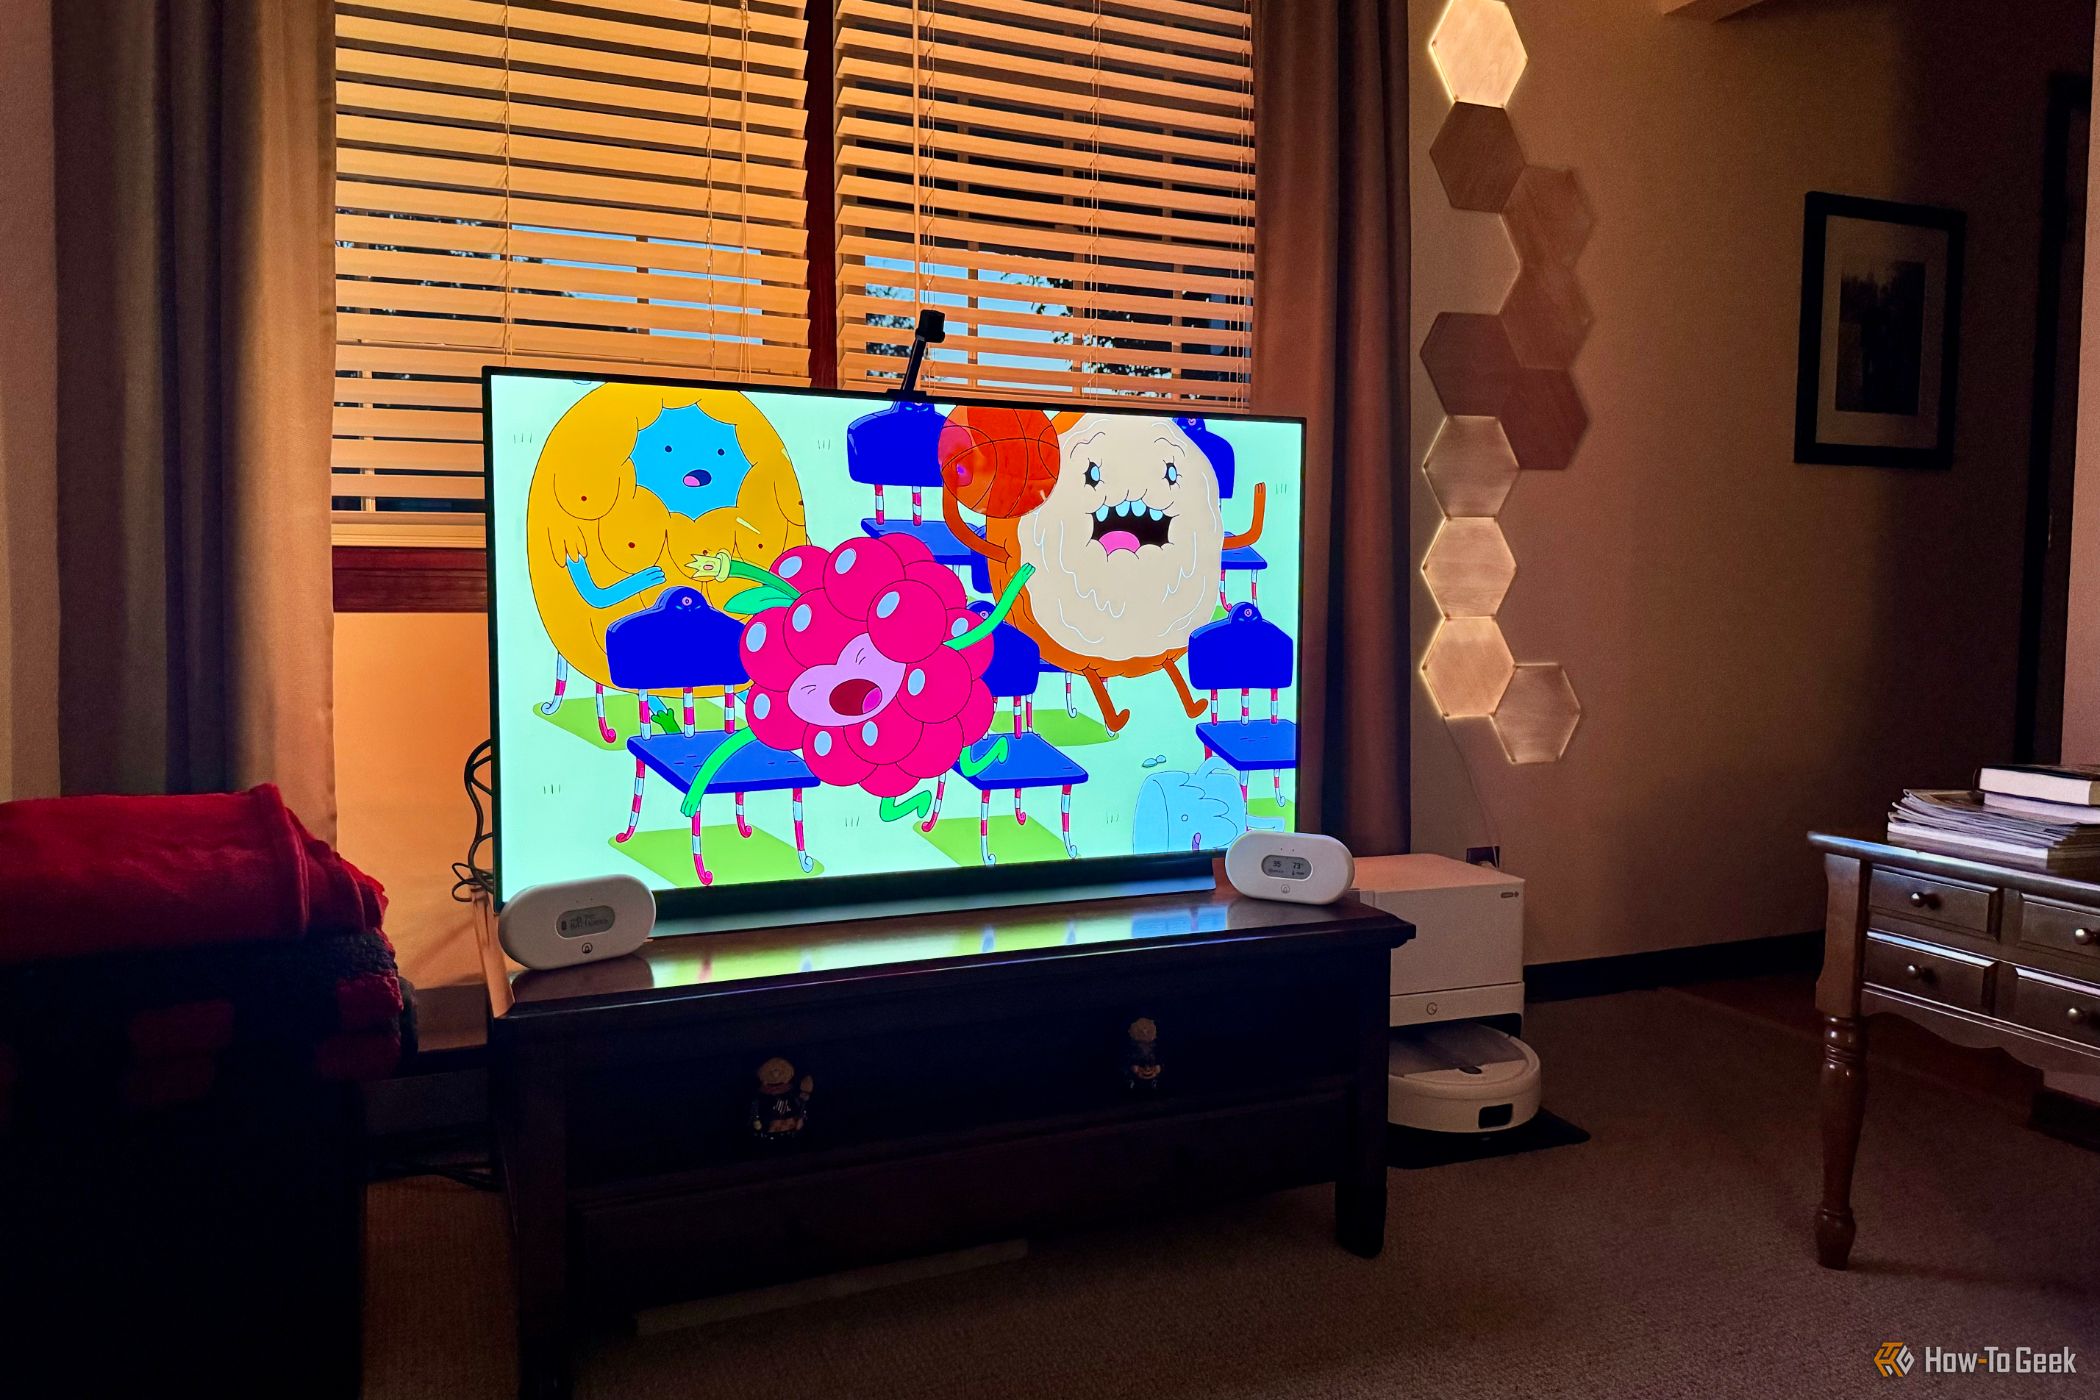 Smart TV in a living room showing Nanoleaf 4D lights on all four sides